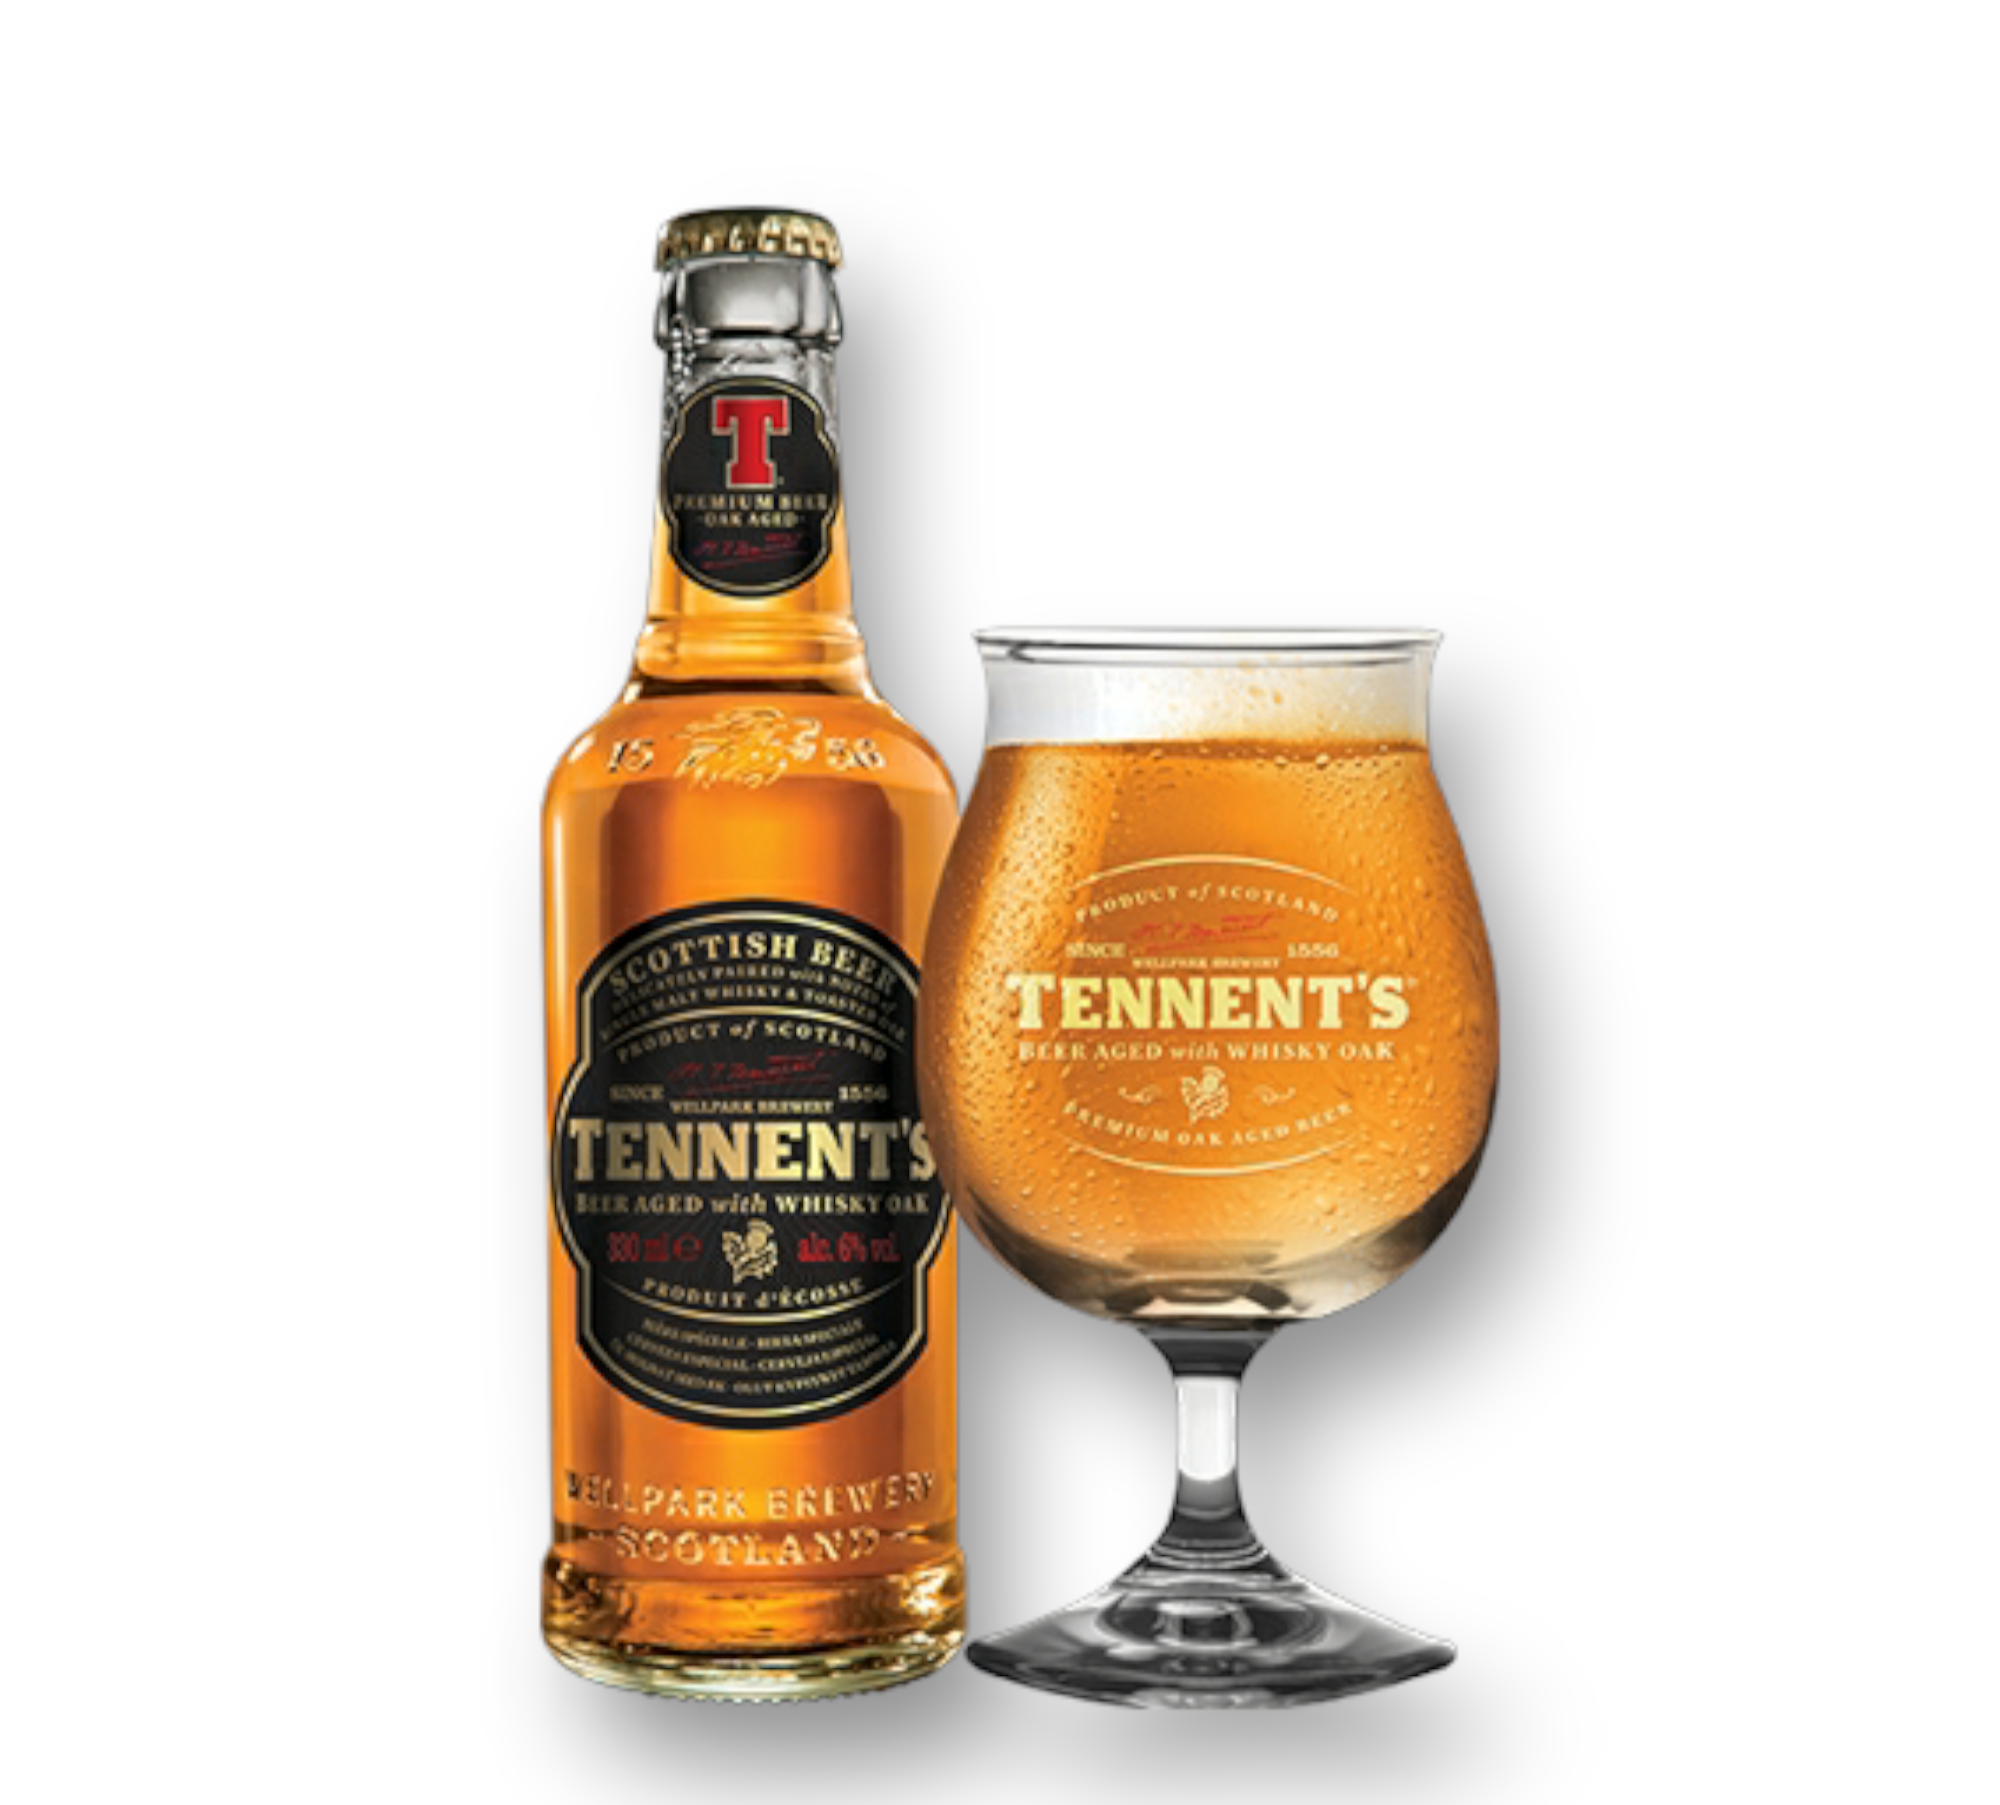 Tennent's Whiskey Oak 0,33l - Beer Aged with Whisky Oak- Das Original aus Schottland mit 6% Vol.